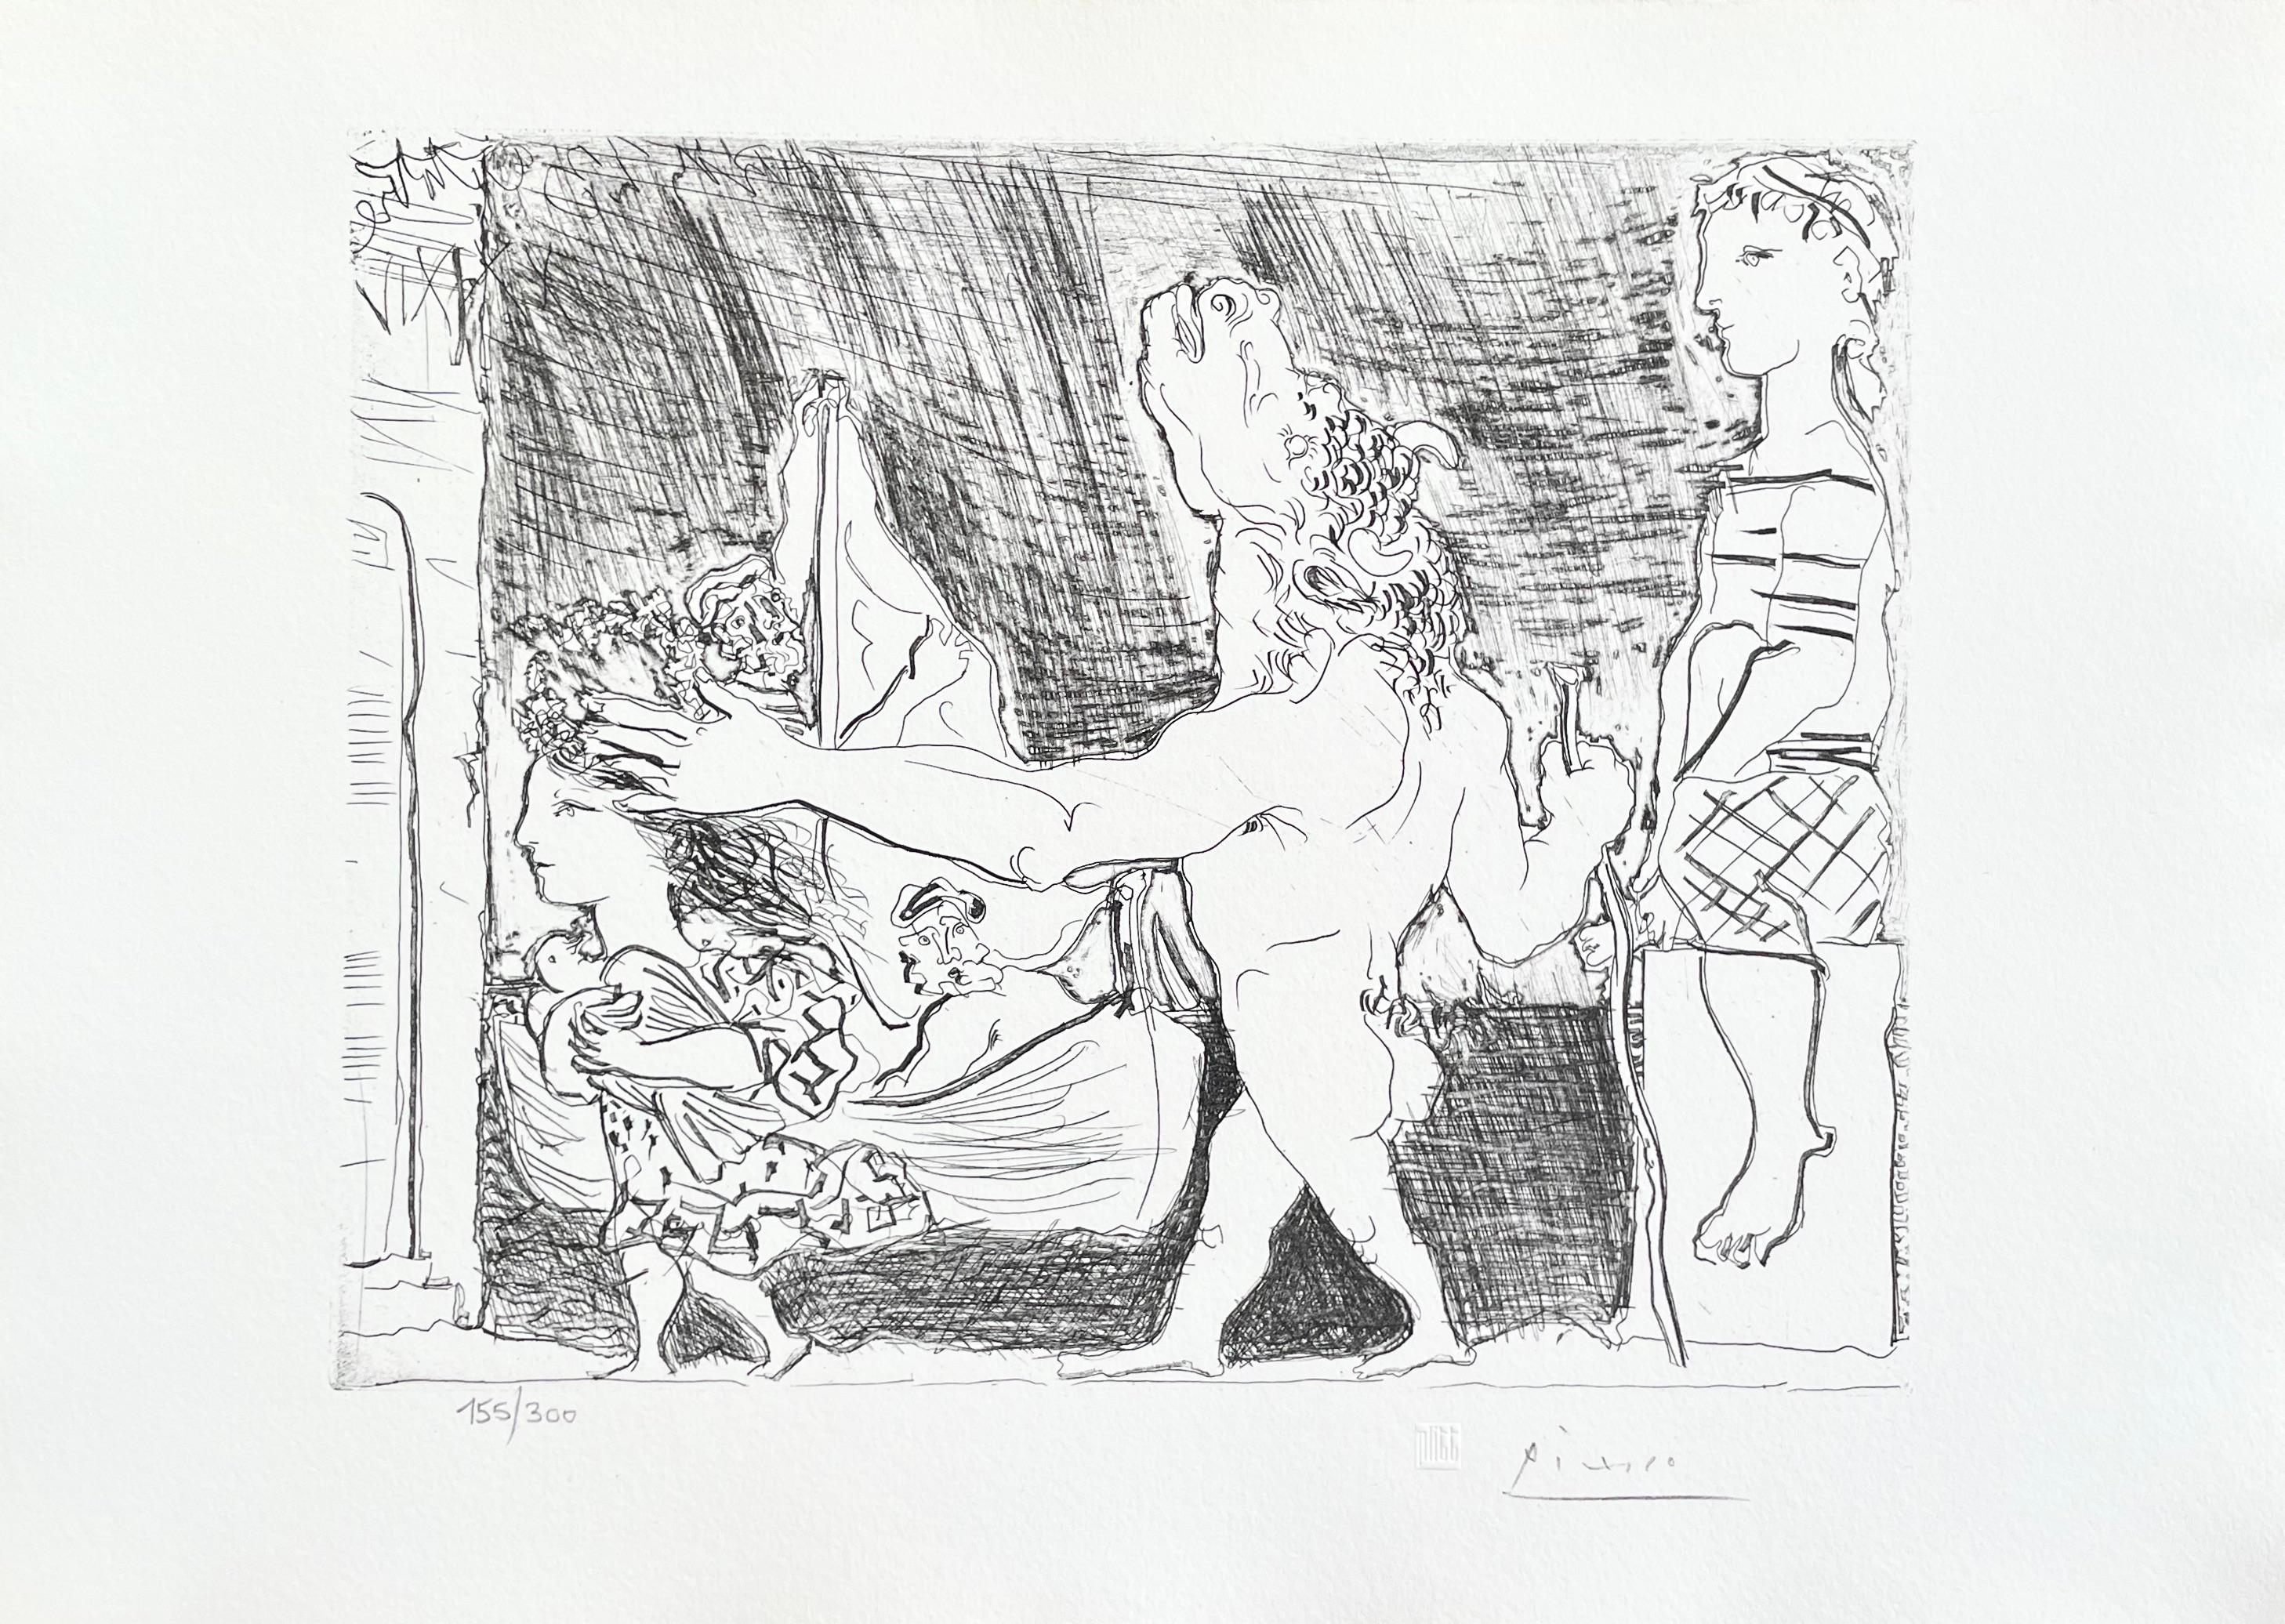 Picasso, Minotaure aveugle guidé dans la Nuit par une Petite (after) - Print by Pablo Picasso